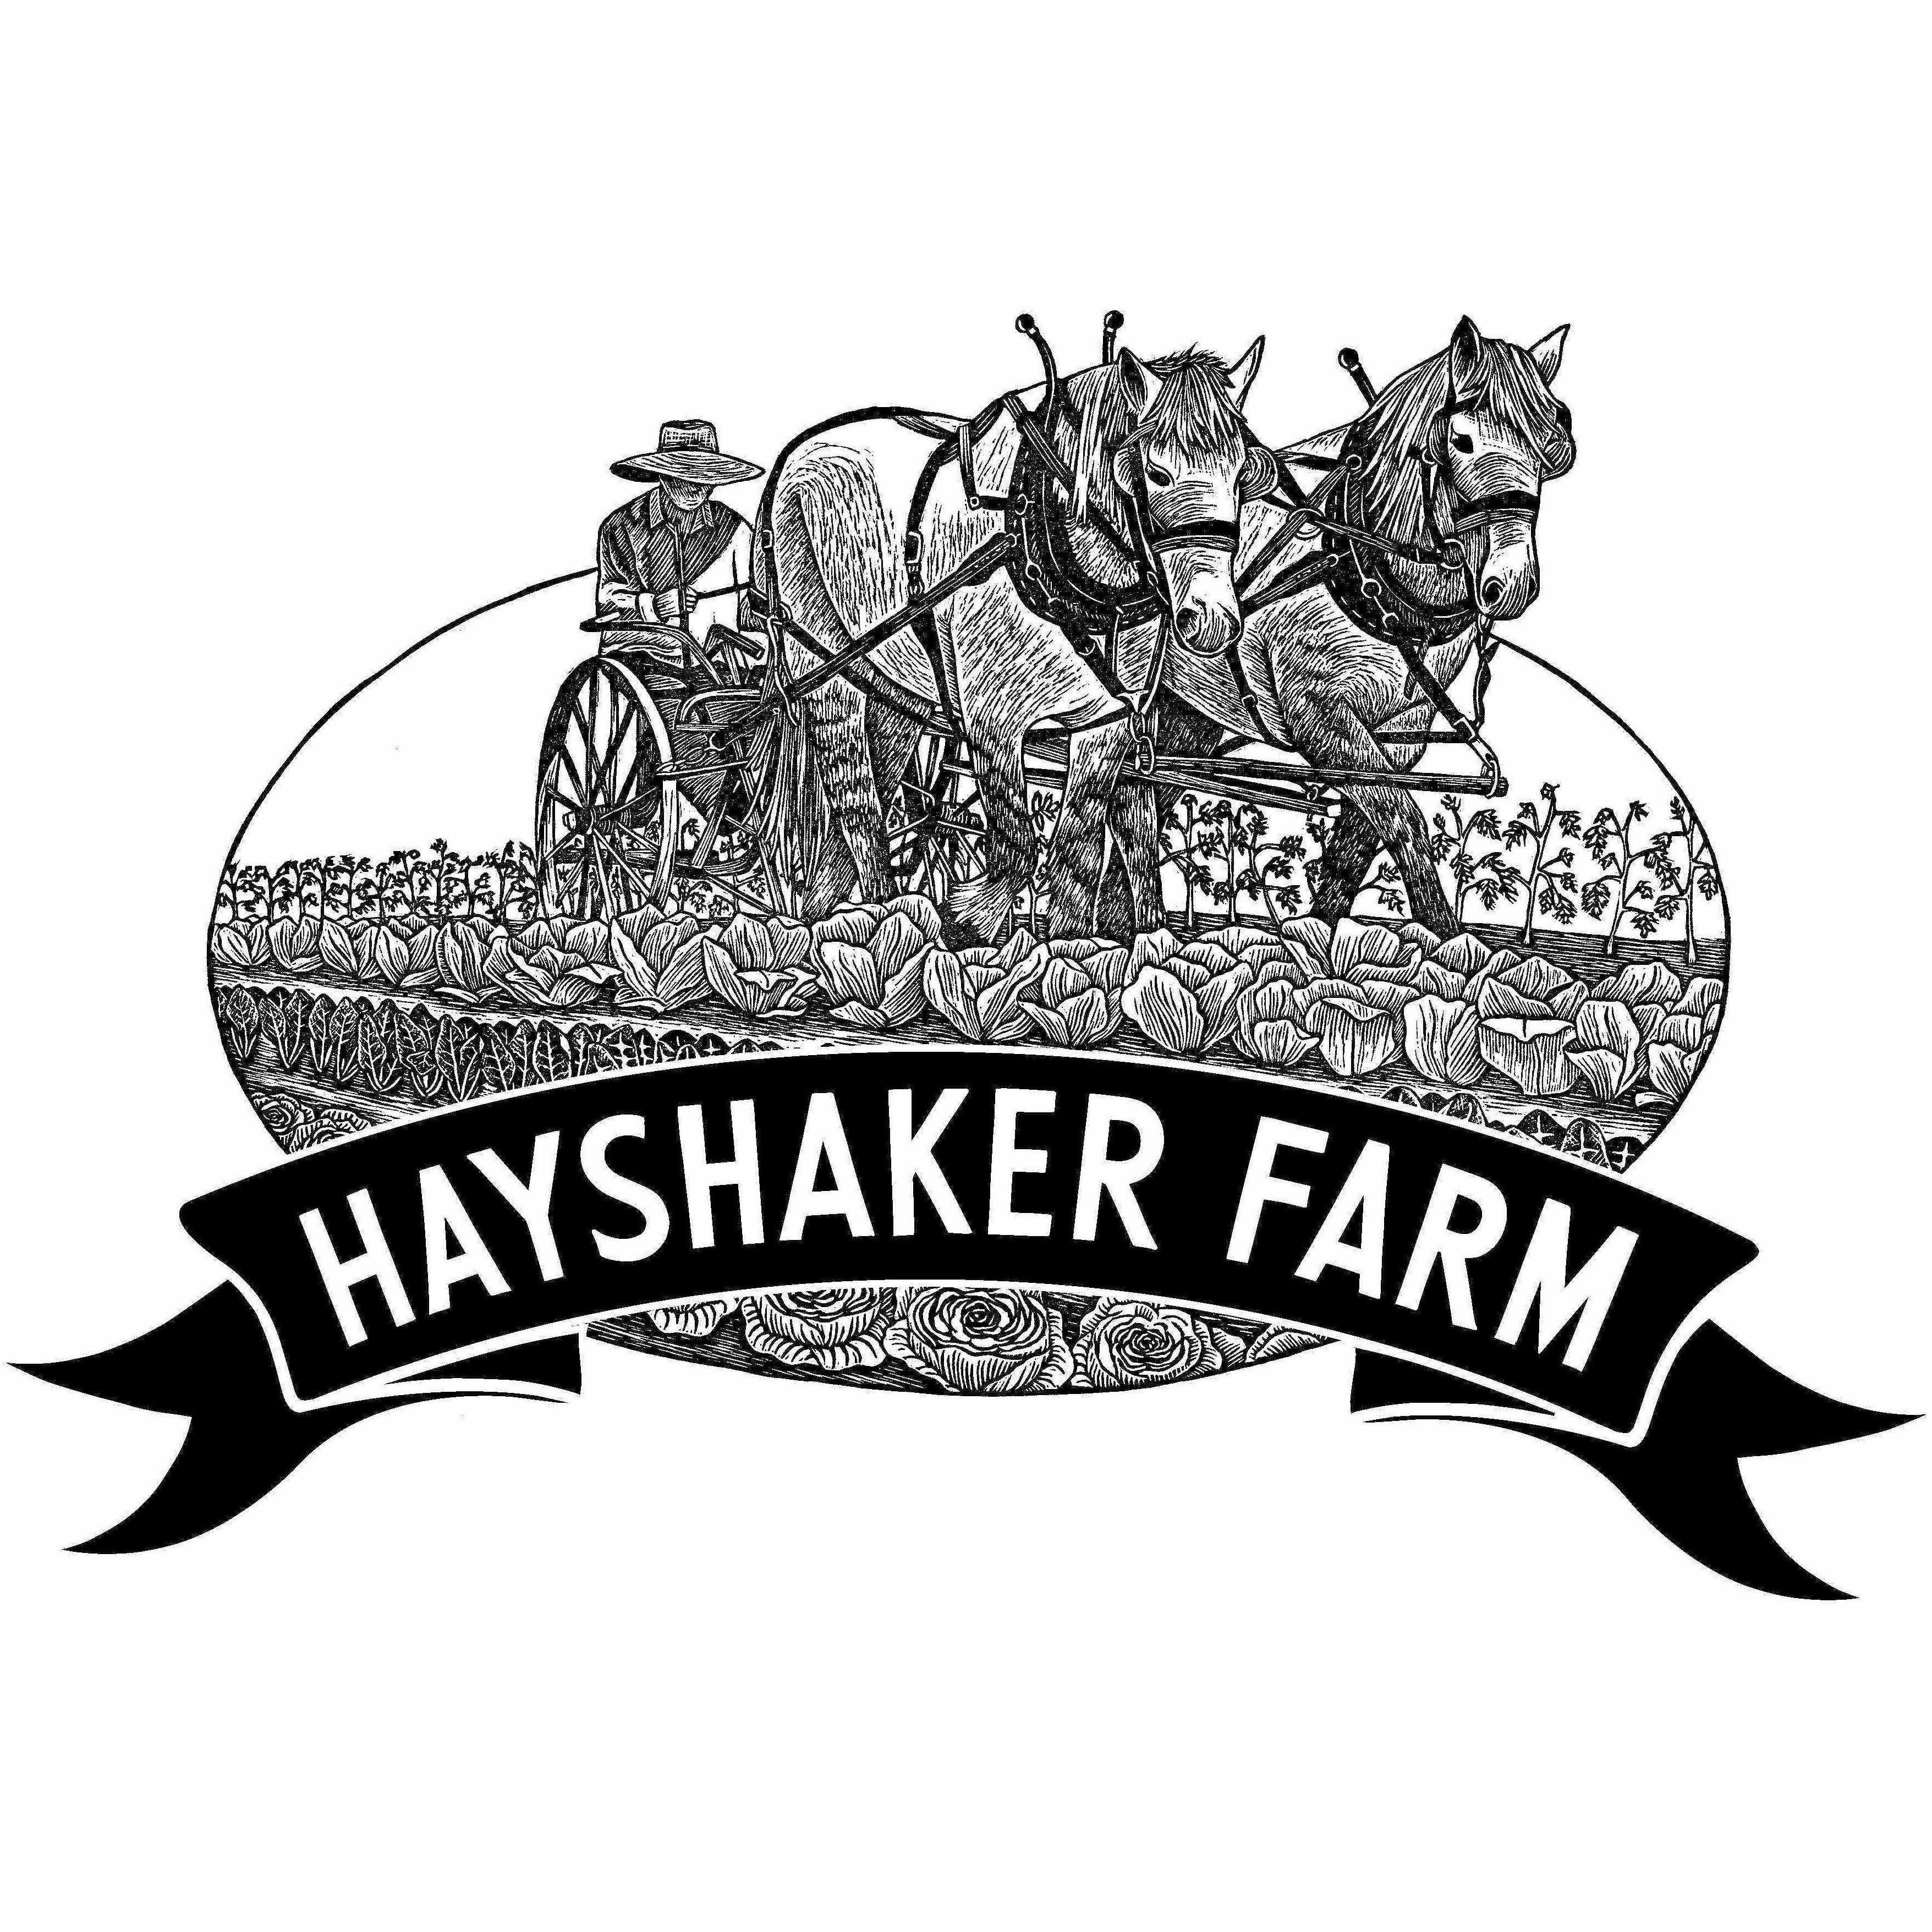 Hayshaker Farm